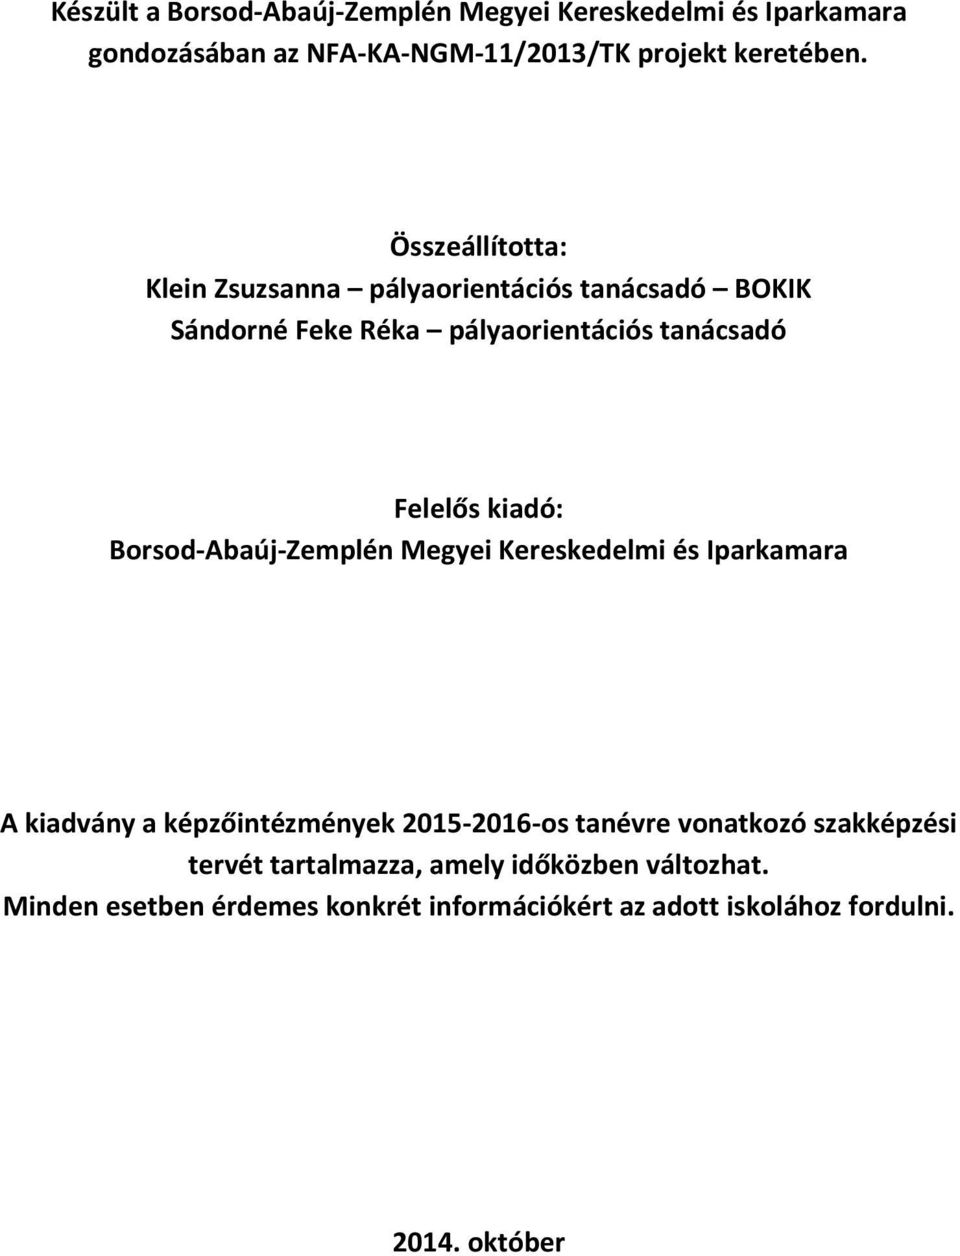 Borsod-Abaúj-Zemplén Megyei Kereskedelmi és Iparkamara A kiadvány a képzőintézmények 2015-2016-os tanévre vonatkozó szakképzési